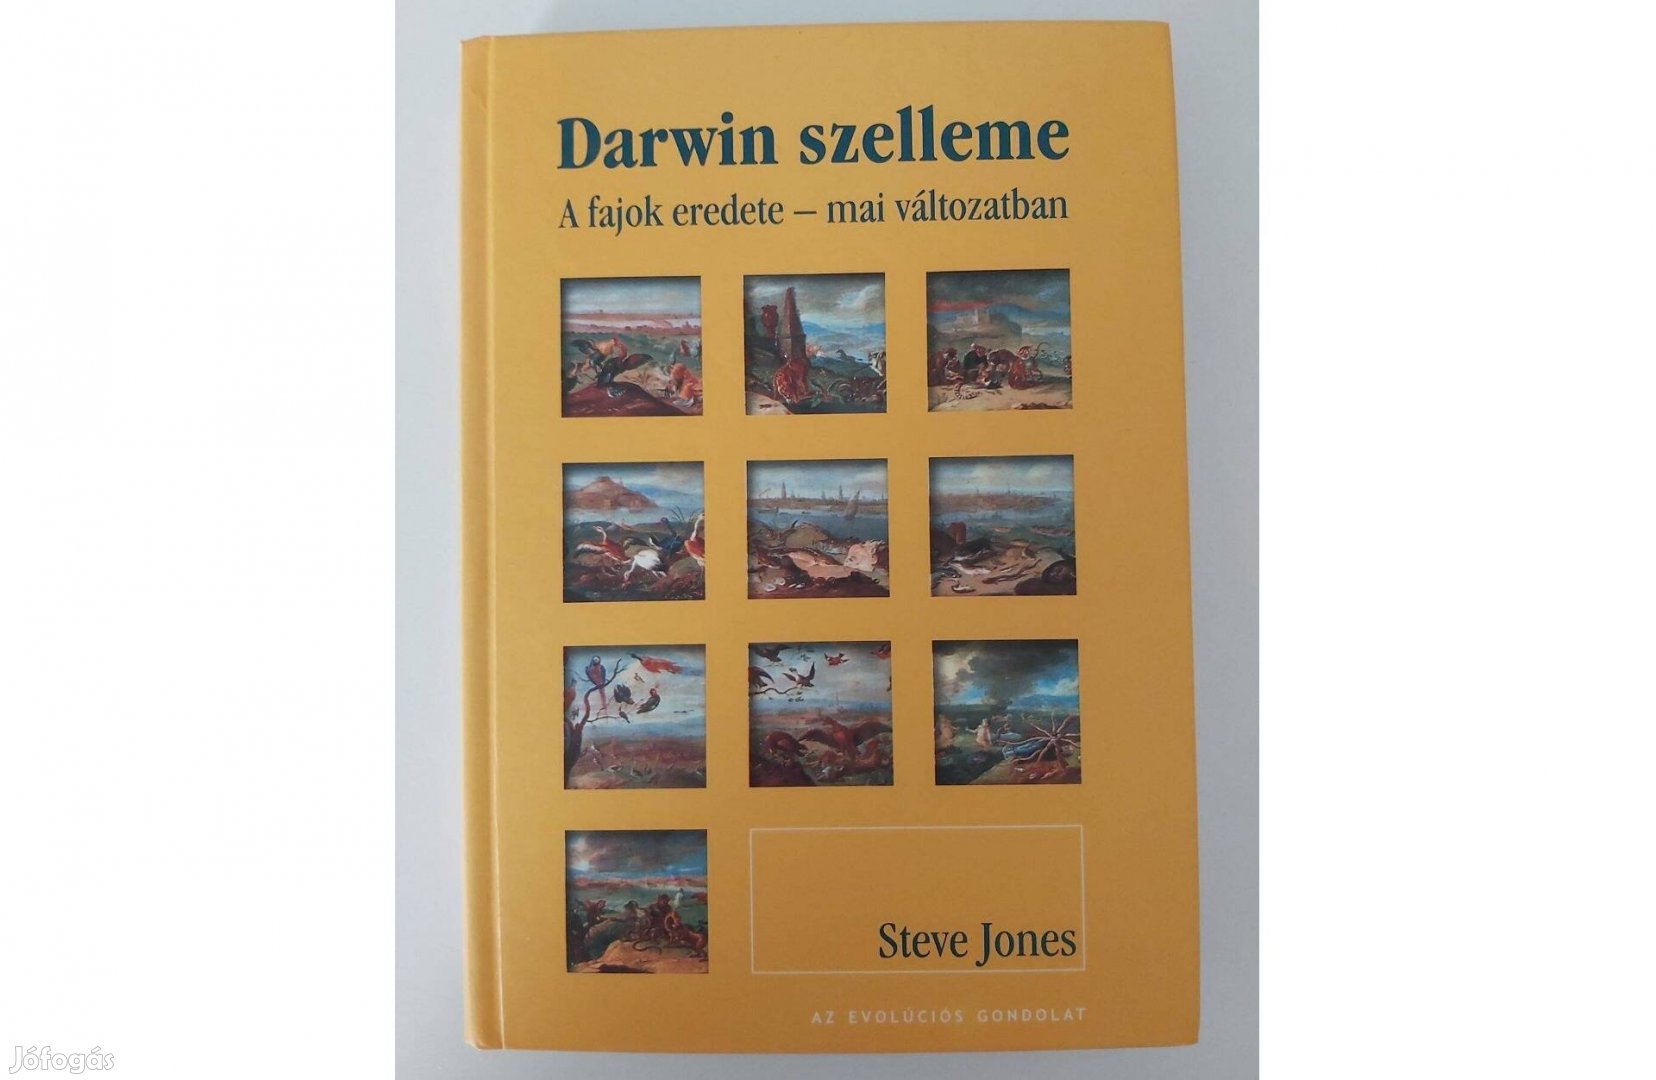 Steve Jones: Darwin szelleme (A fajok eredete mai változatban)